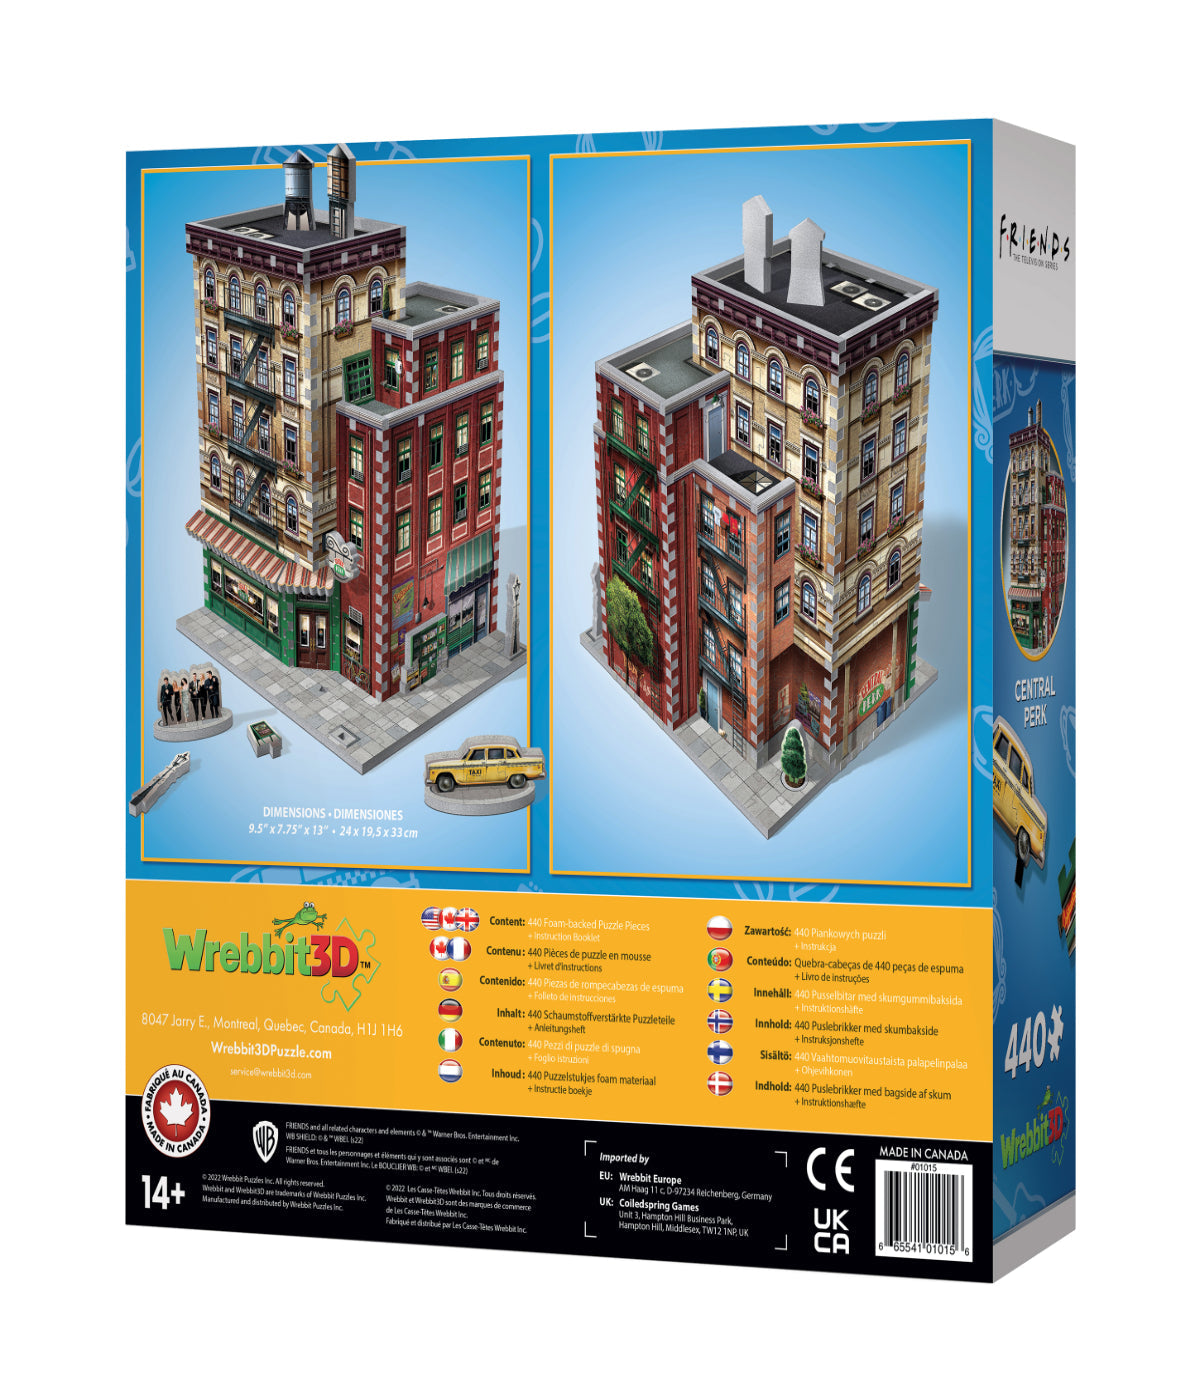 Friends - Central Perk 3D Jigsaw Puzzle: 440 Pcs Multi